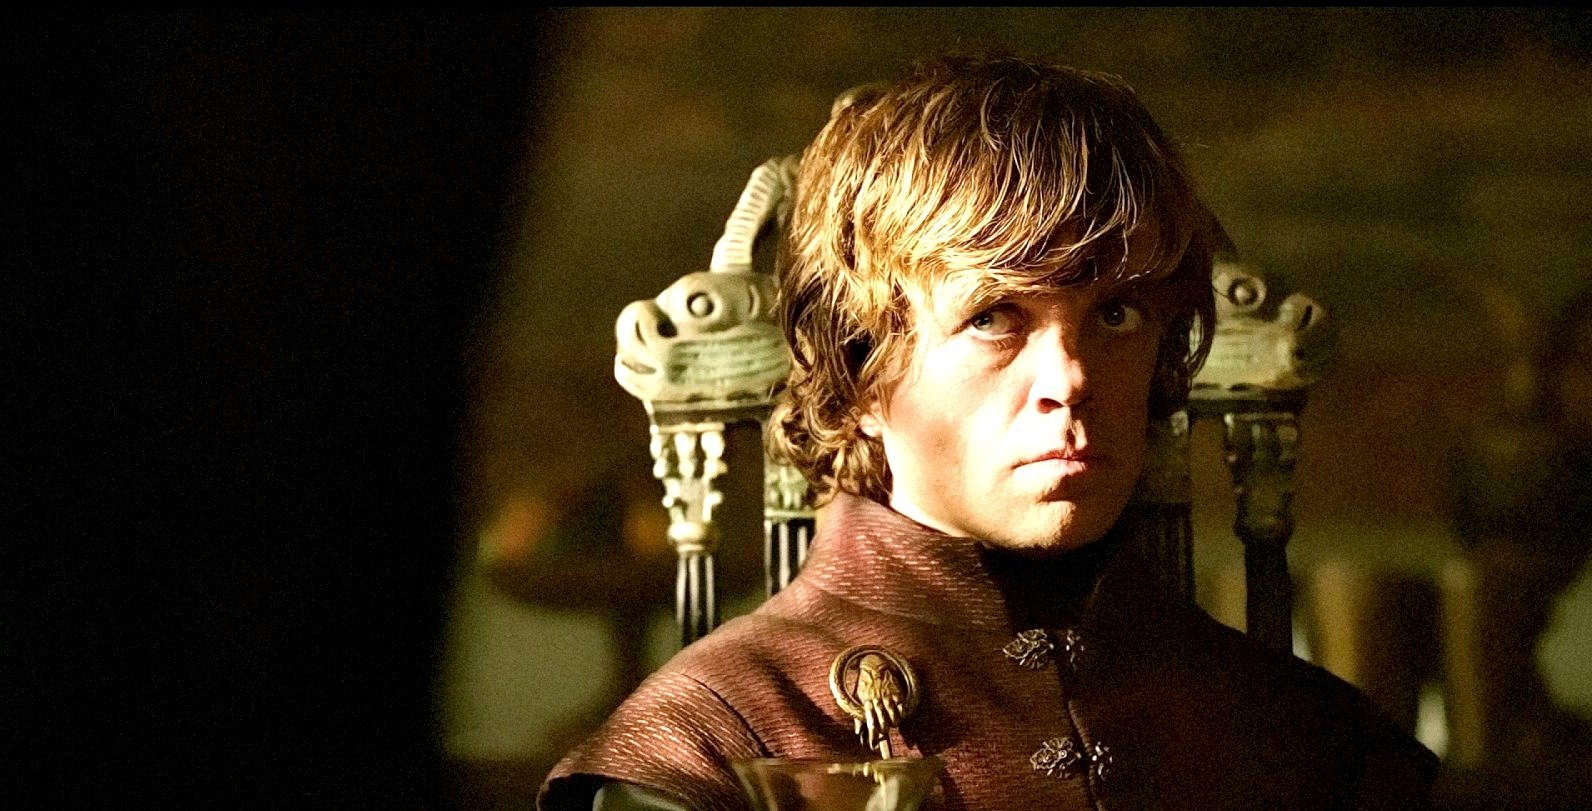 Μικρός στο μάτι… Ο Tyrion Lannister και οι ατάκες του που σπάνε κόκκαλα